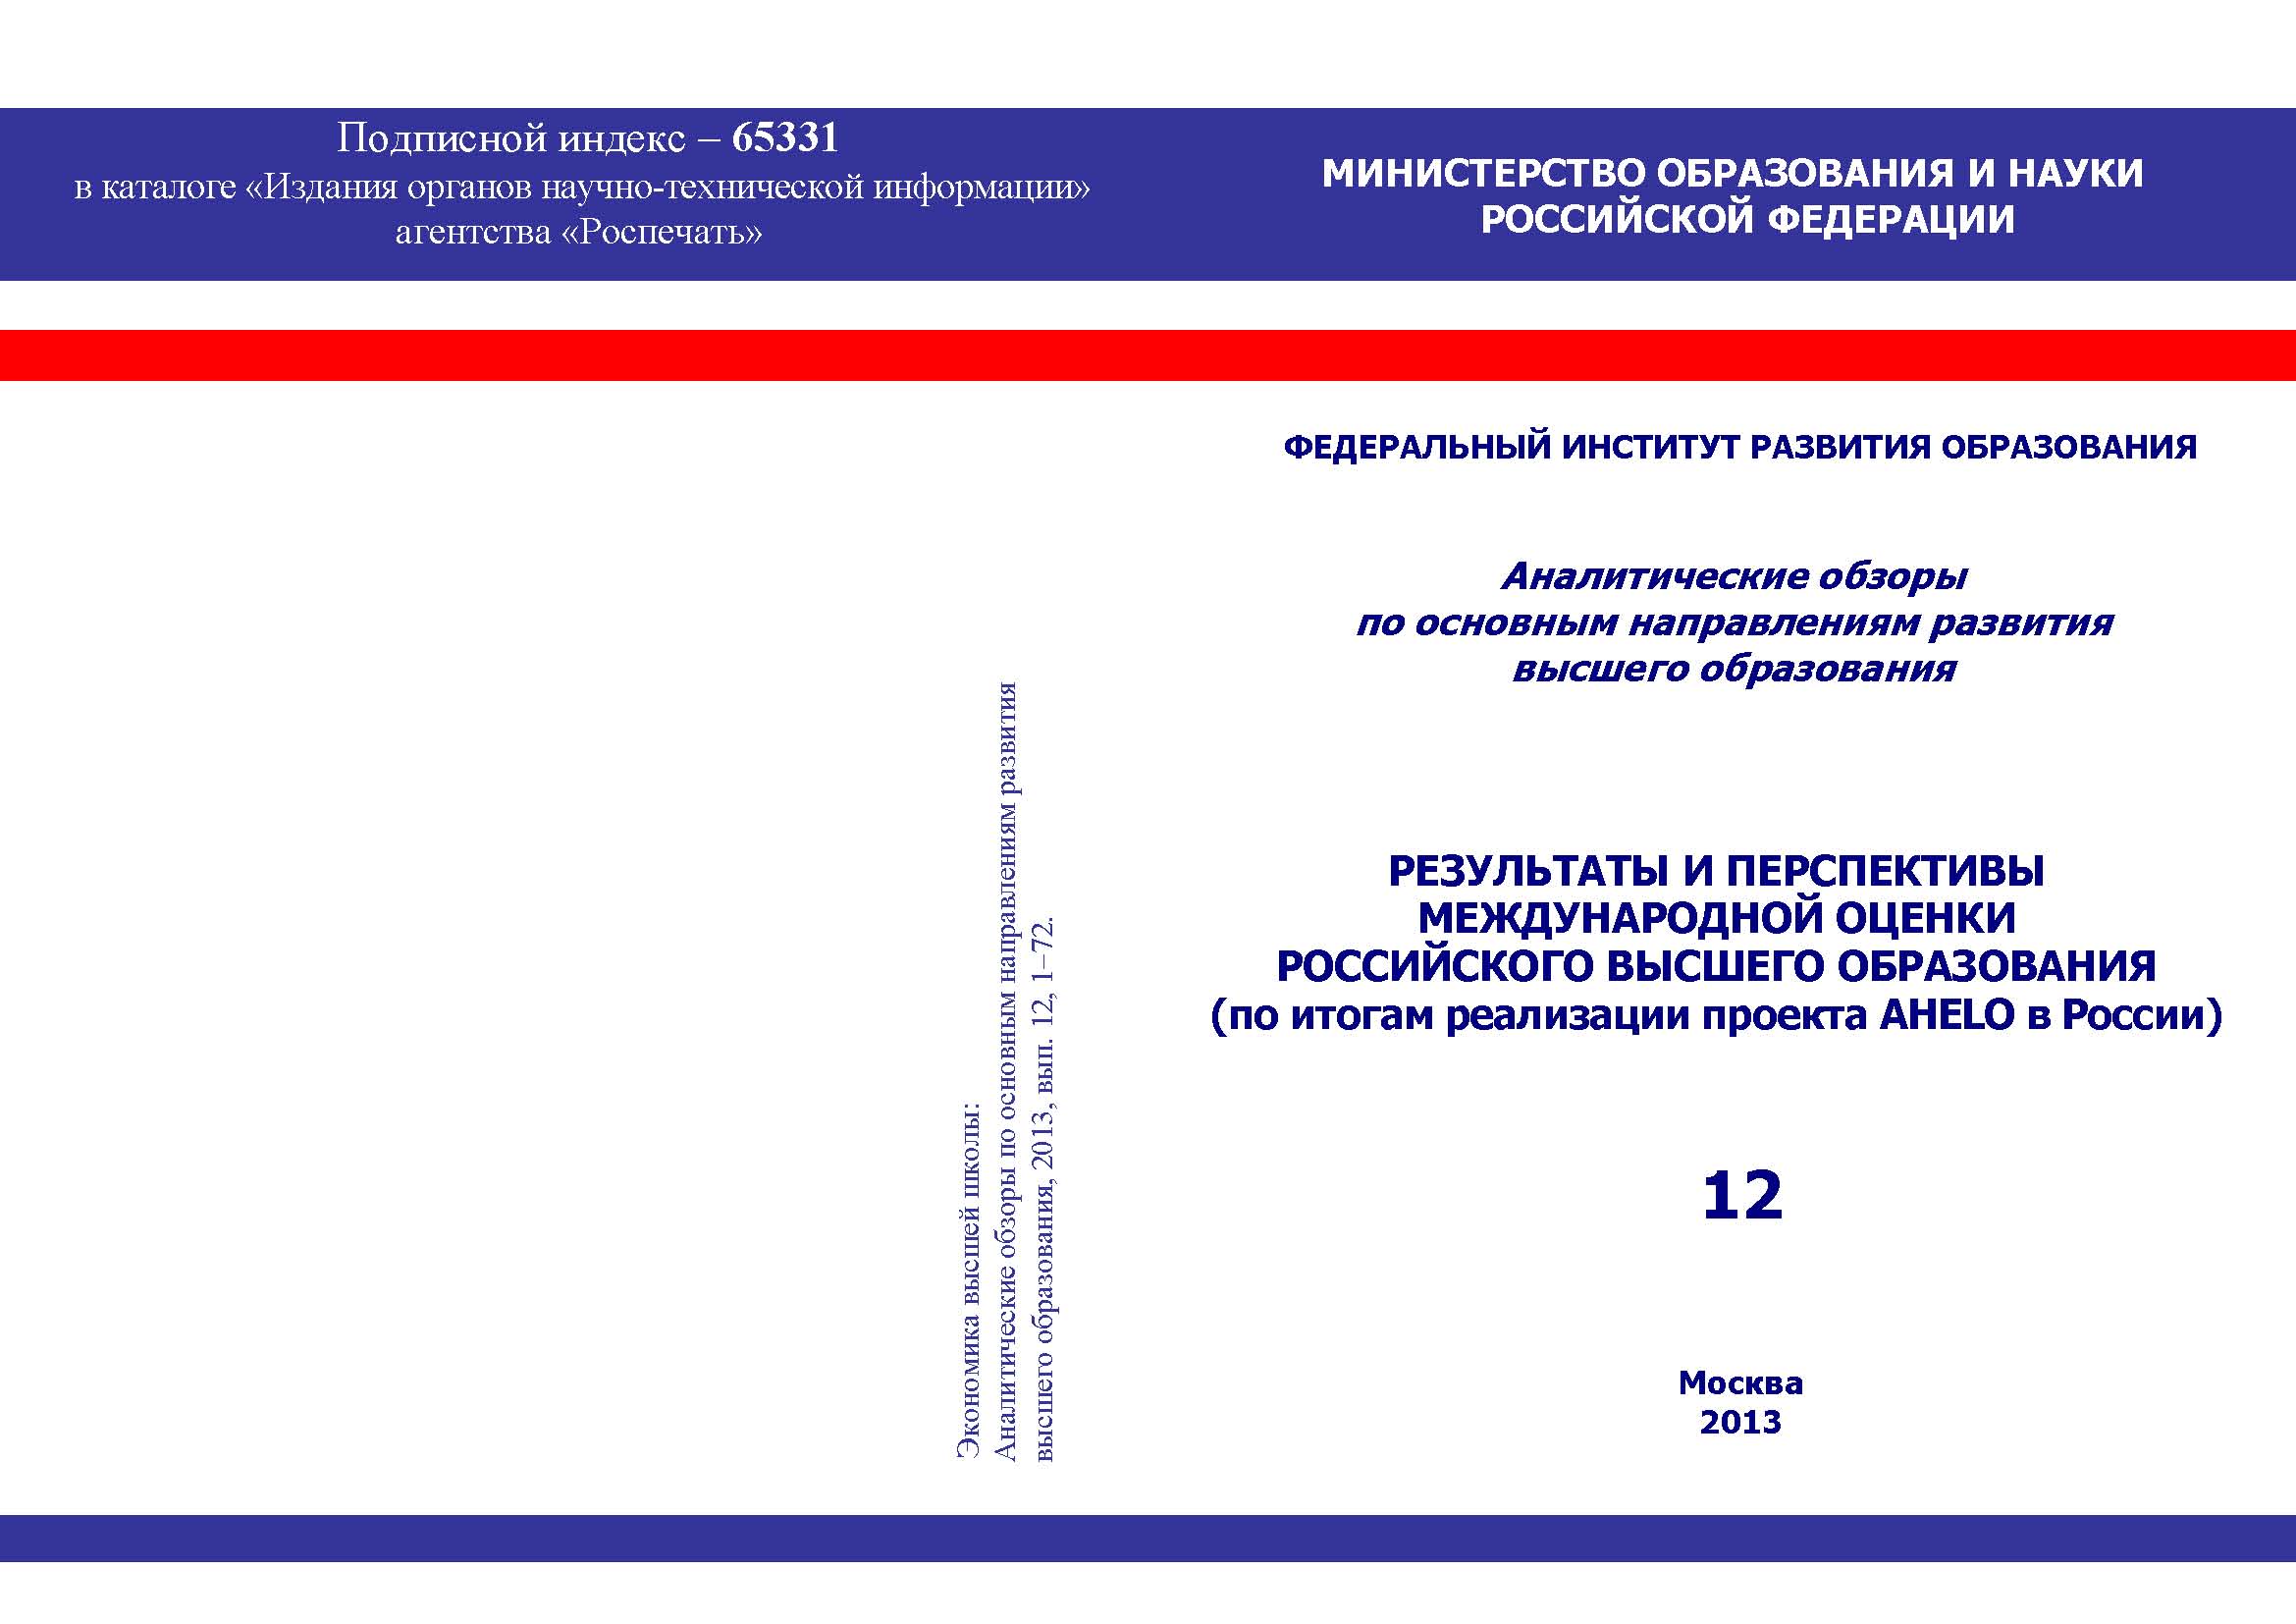 Результаты и перспективы международной оценки российского высшего образования (по итогам реализации проекта AHELO в России)